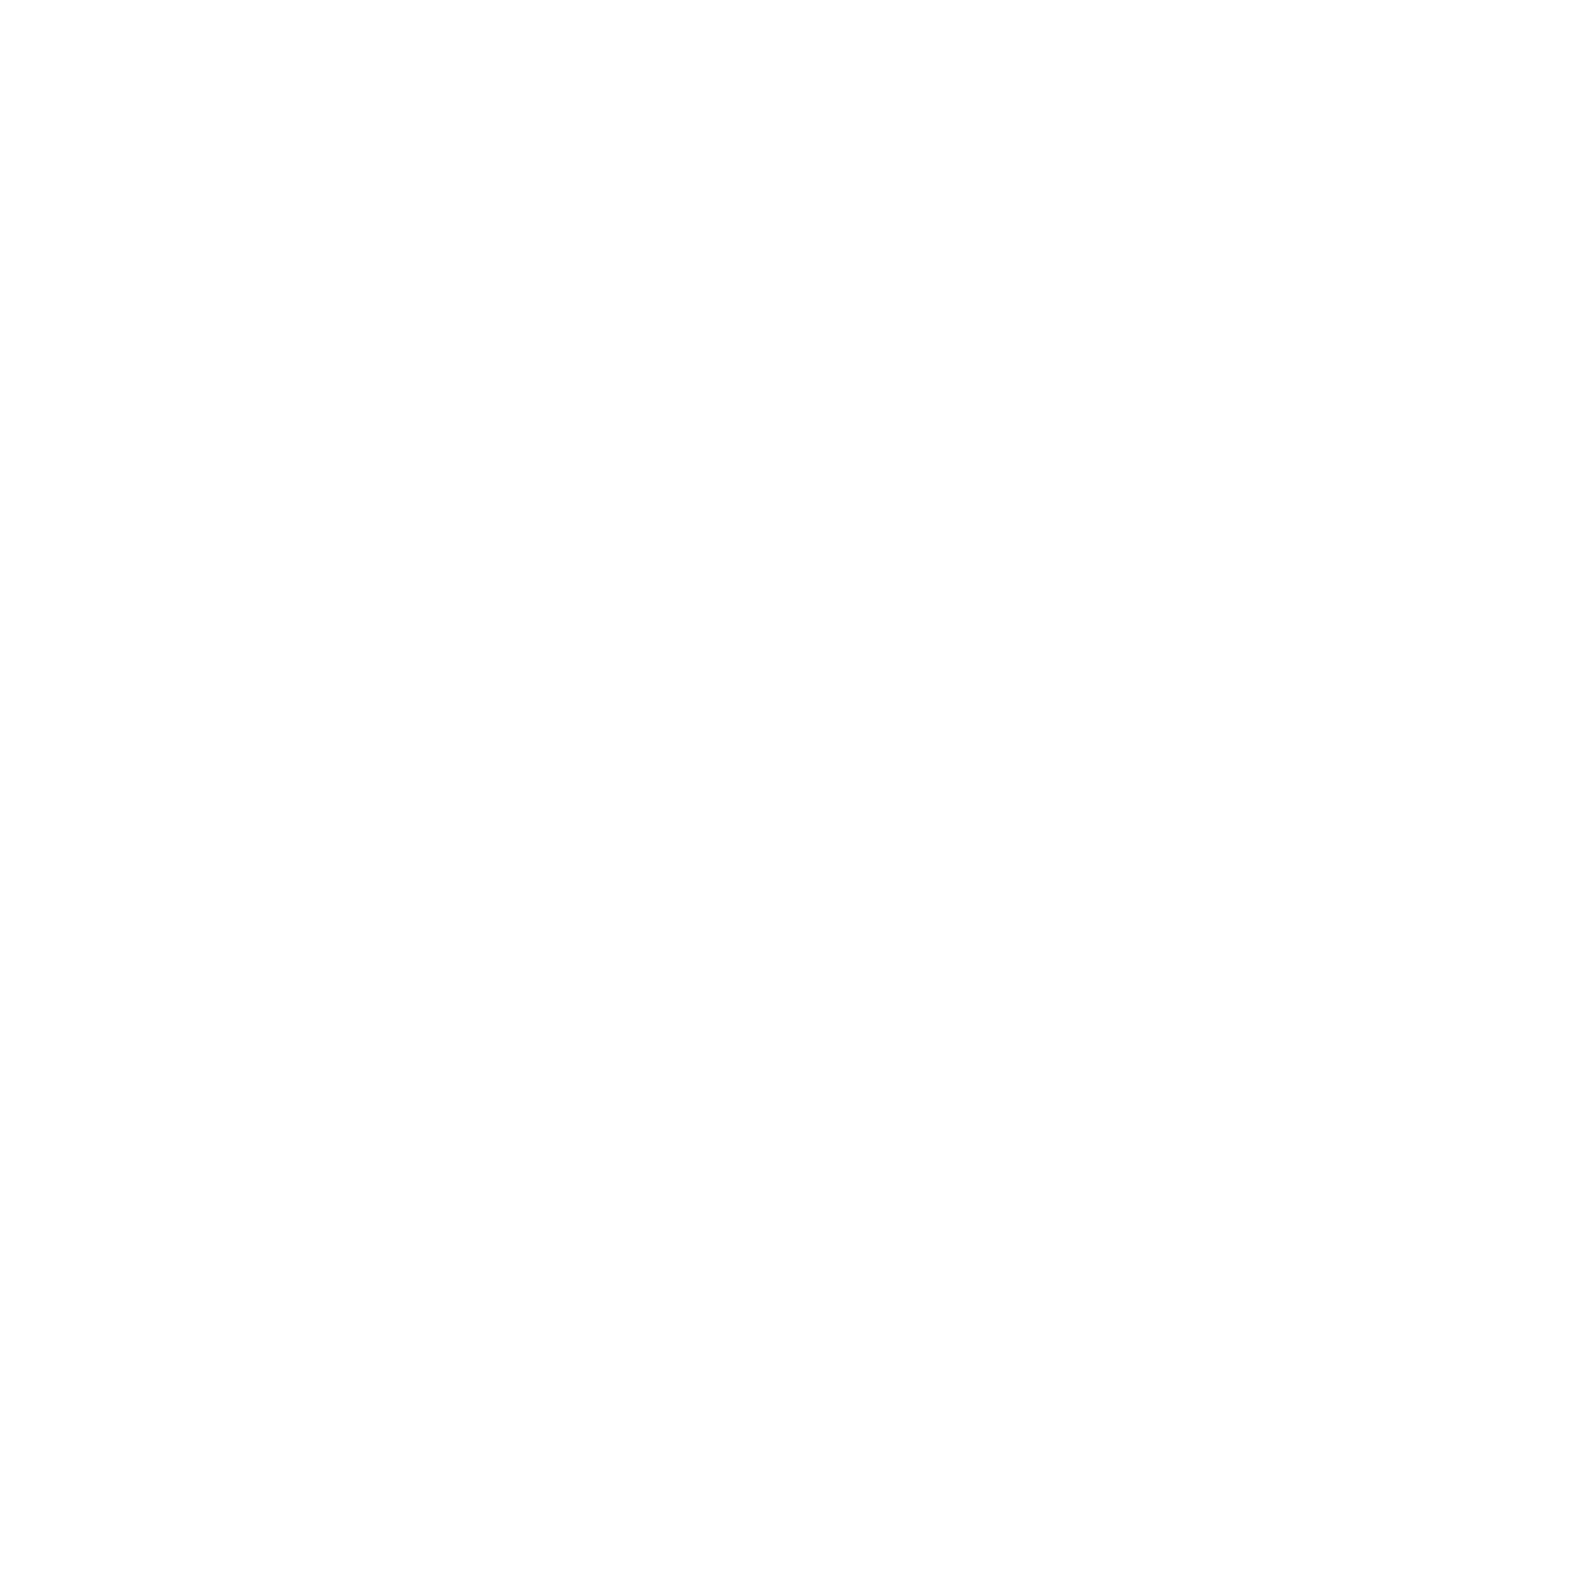 Lion Electric logo pour fonds sombres (PNG transparent)